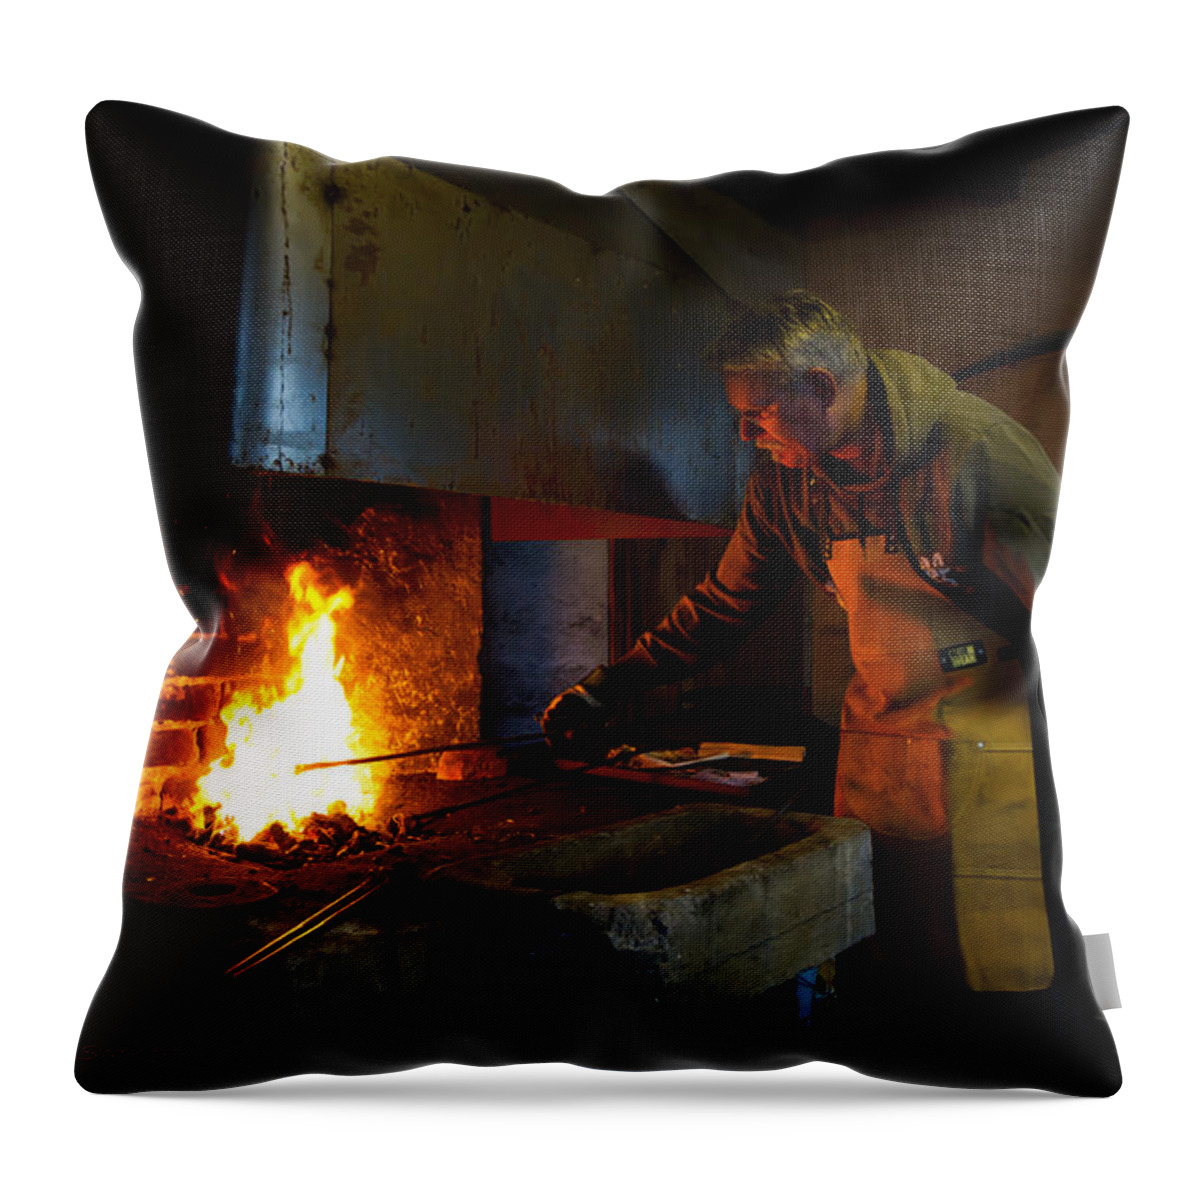 The Torresta Blacksmith Throw Pillow featuring the photograph The Torresta Blacksmith by Torbjorn Swenelius